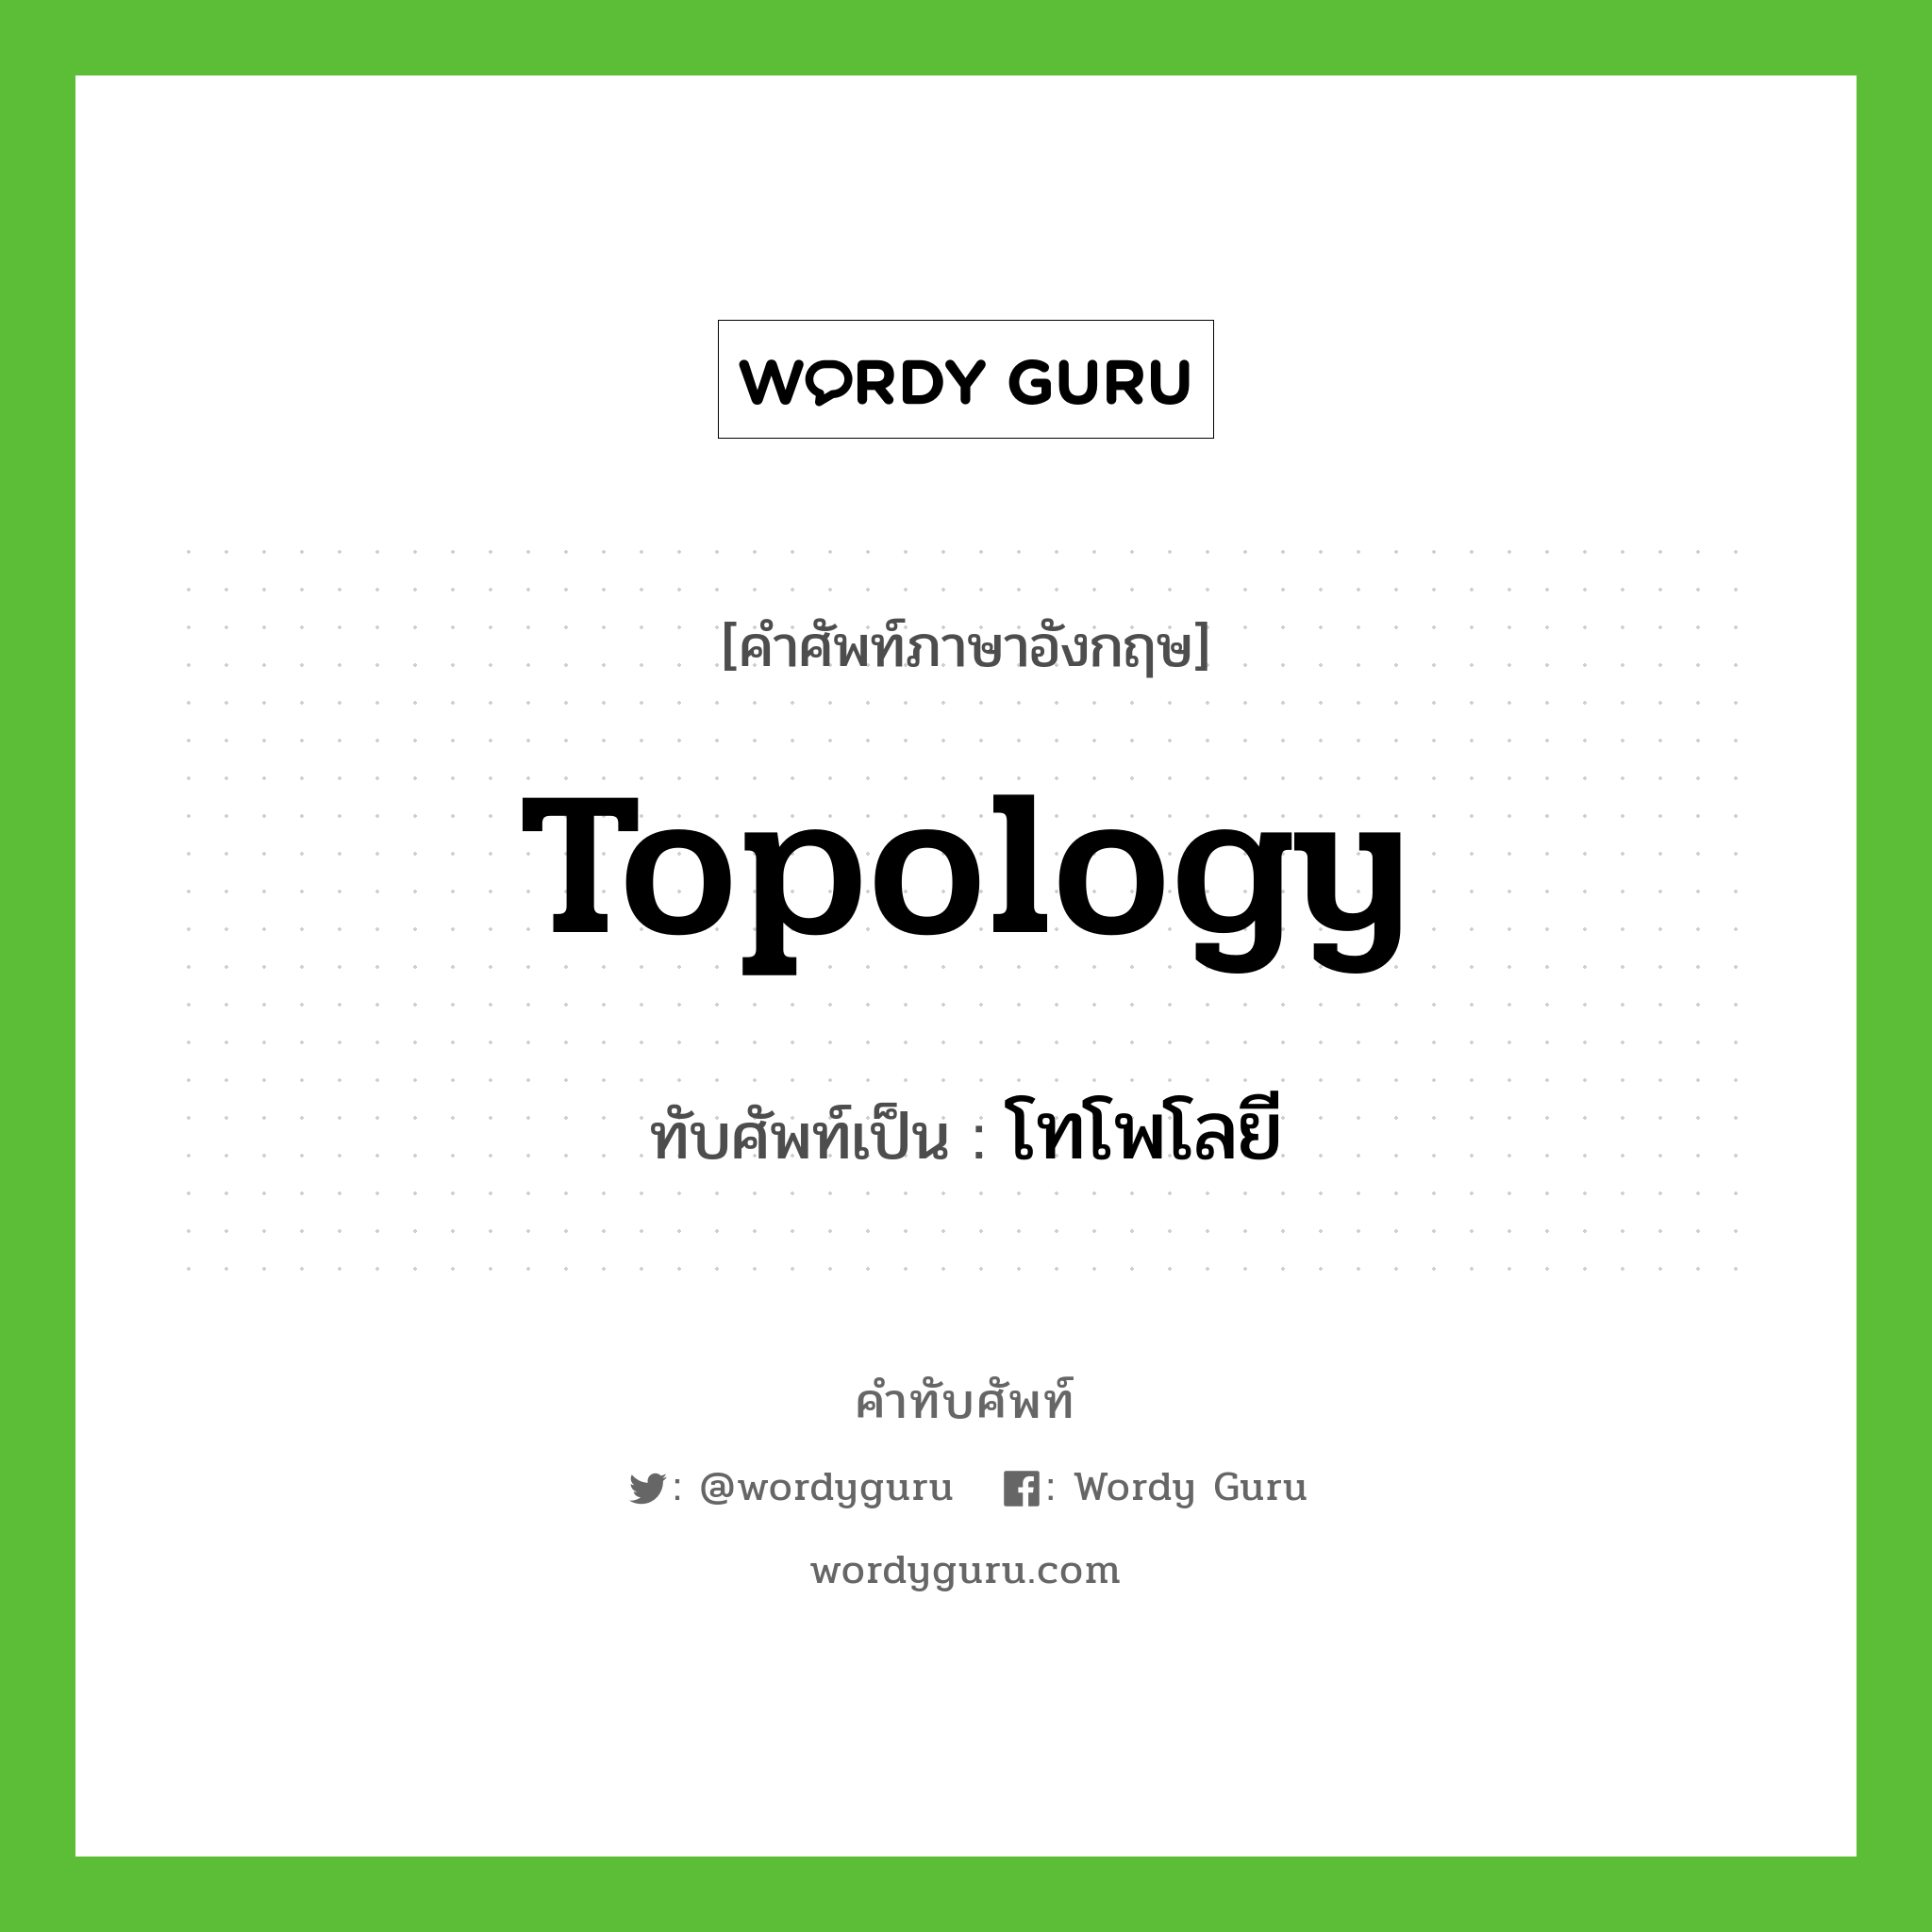 โทโพโลยี เขียนอย่างไร?, คำศัพท์ภาษาอังกฤษ โทโพโลยี ทับศัพท์เป็น topology